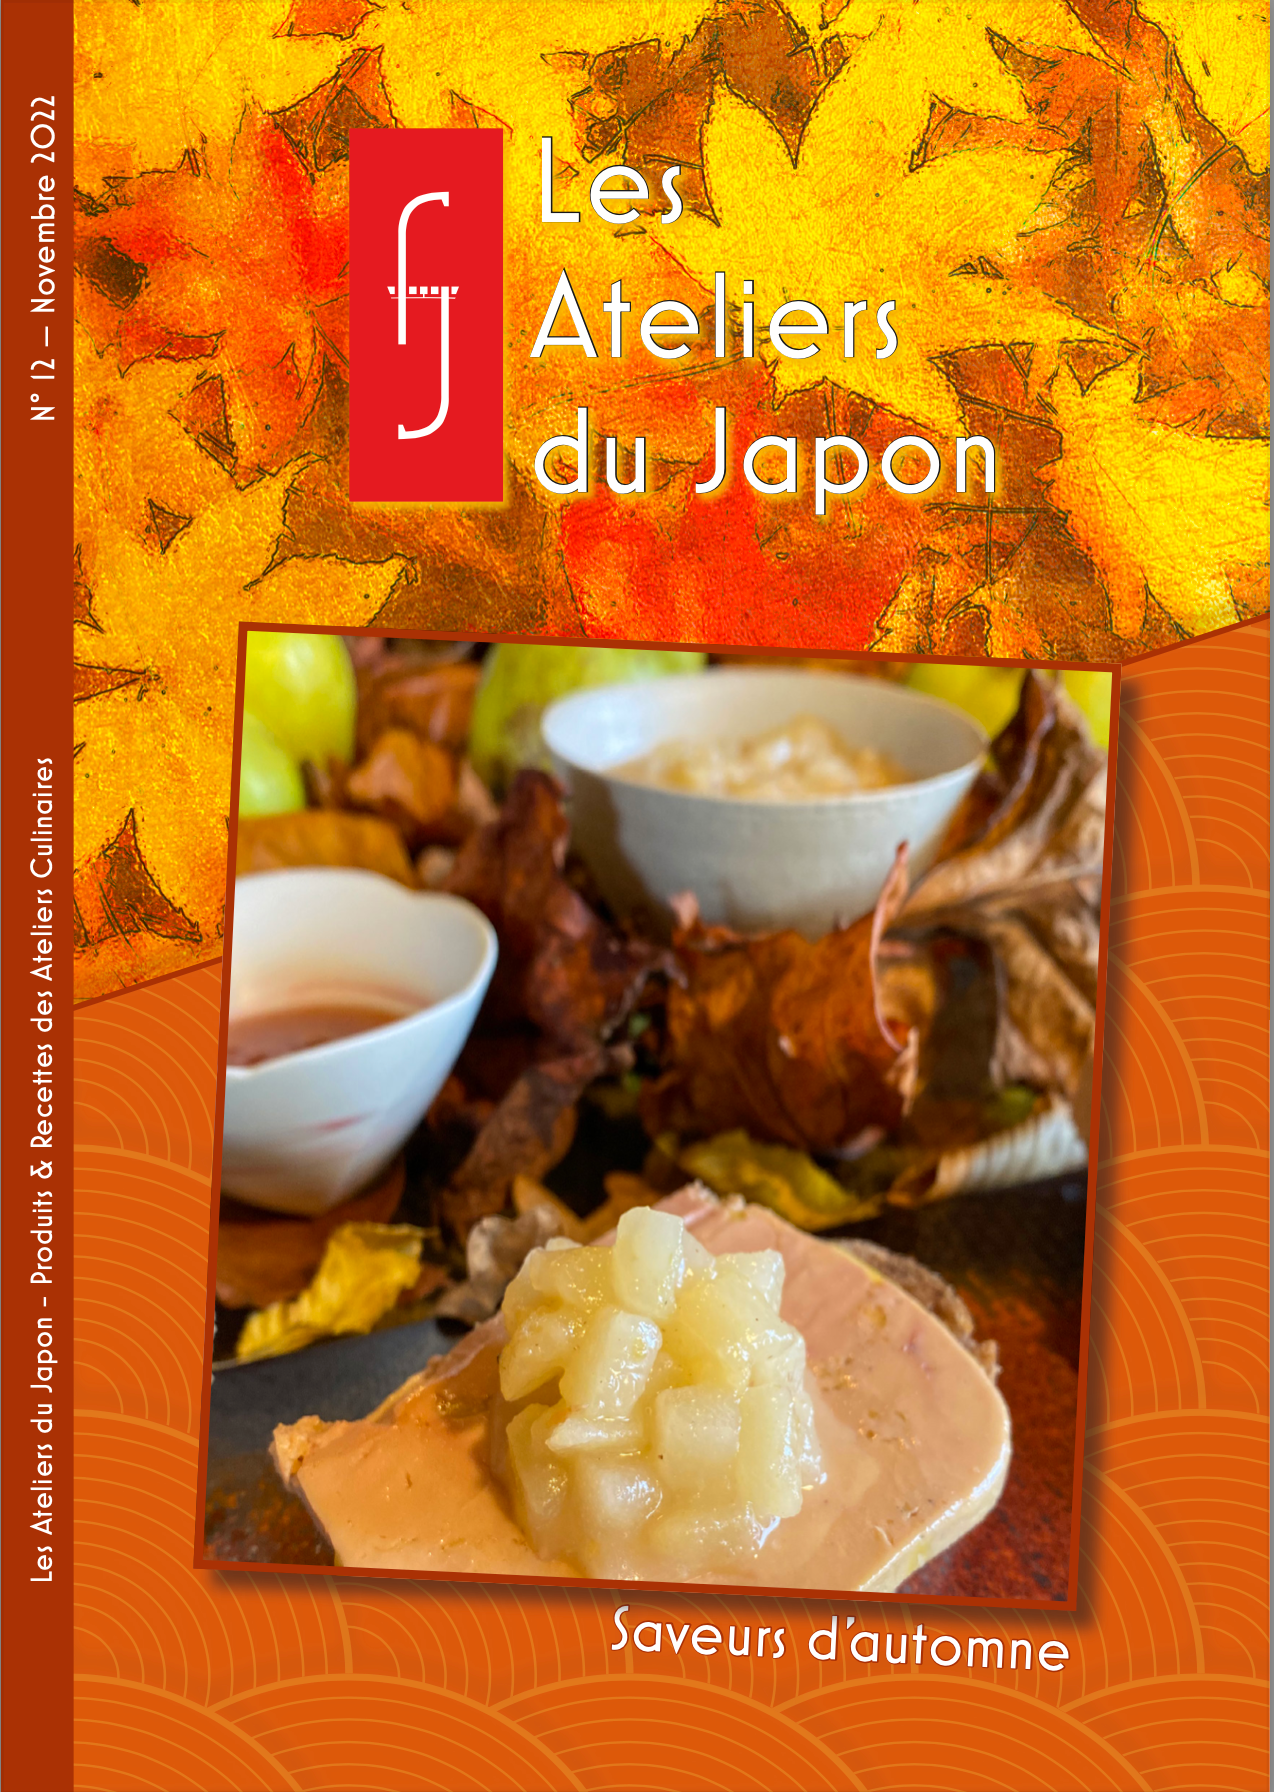 Livret de recettes Box “Saveurs d'automne” - Les Ateliers du Japon